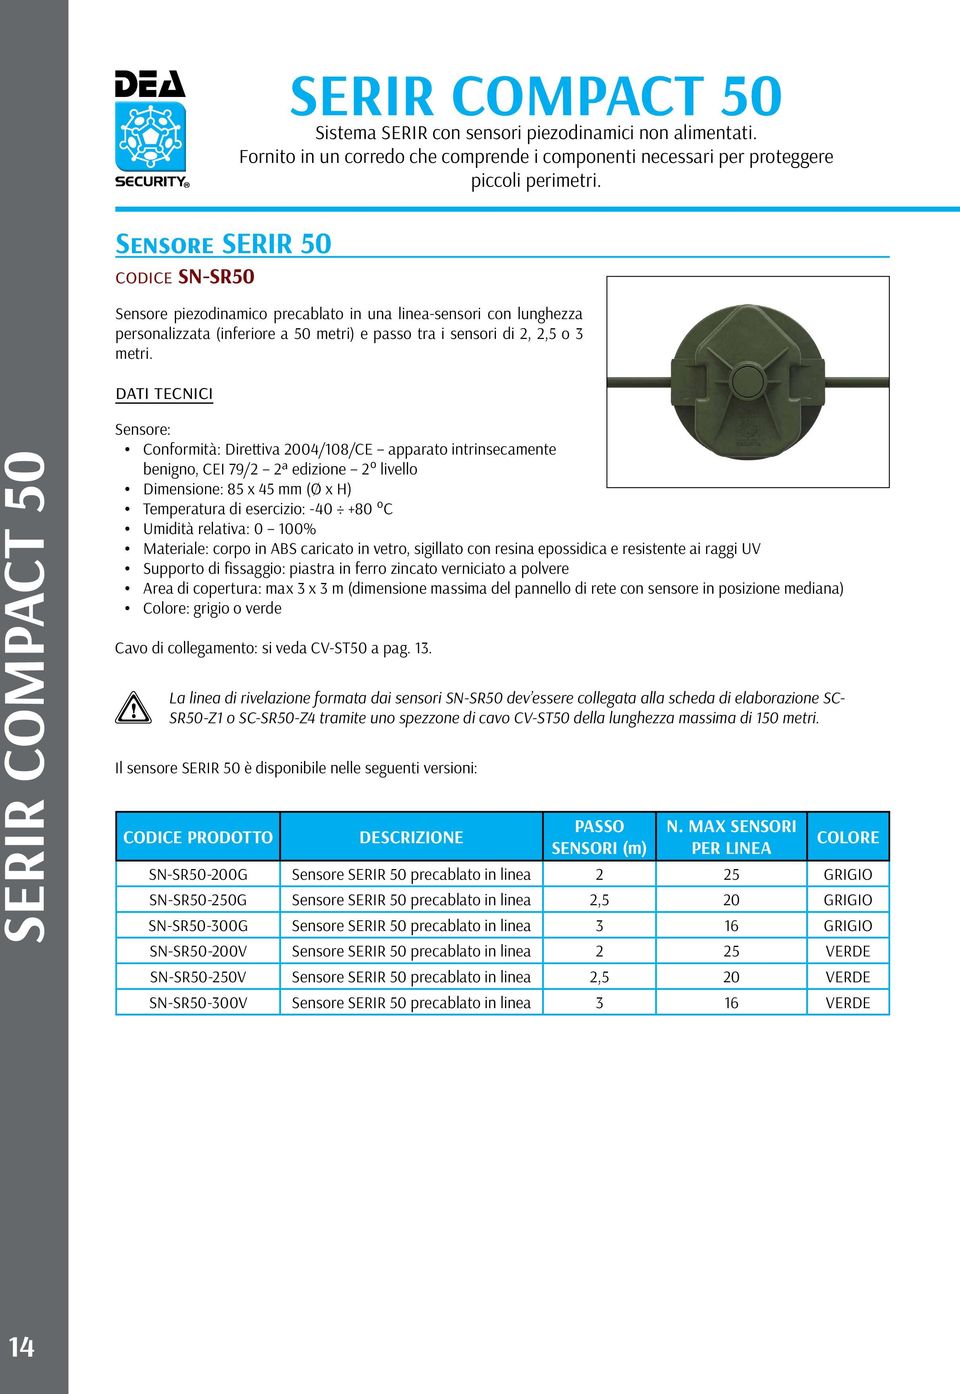 SERIR COMPACT 50 Sensore: Conformità: Direttiva 2004/108/CE apparato intrinsecamente benigno, CEI 79/2 2ª edizione 2 livello Dimensione: 85 x 45 mm (Ø x H) Temperatura di esercizio: -40 +80 C Umidità